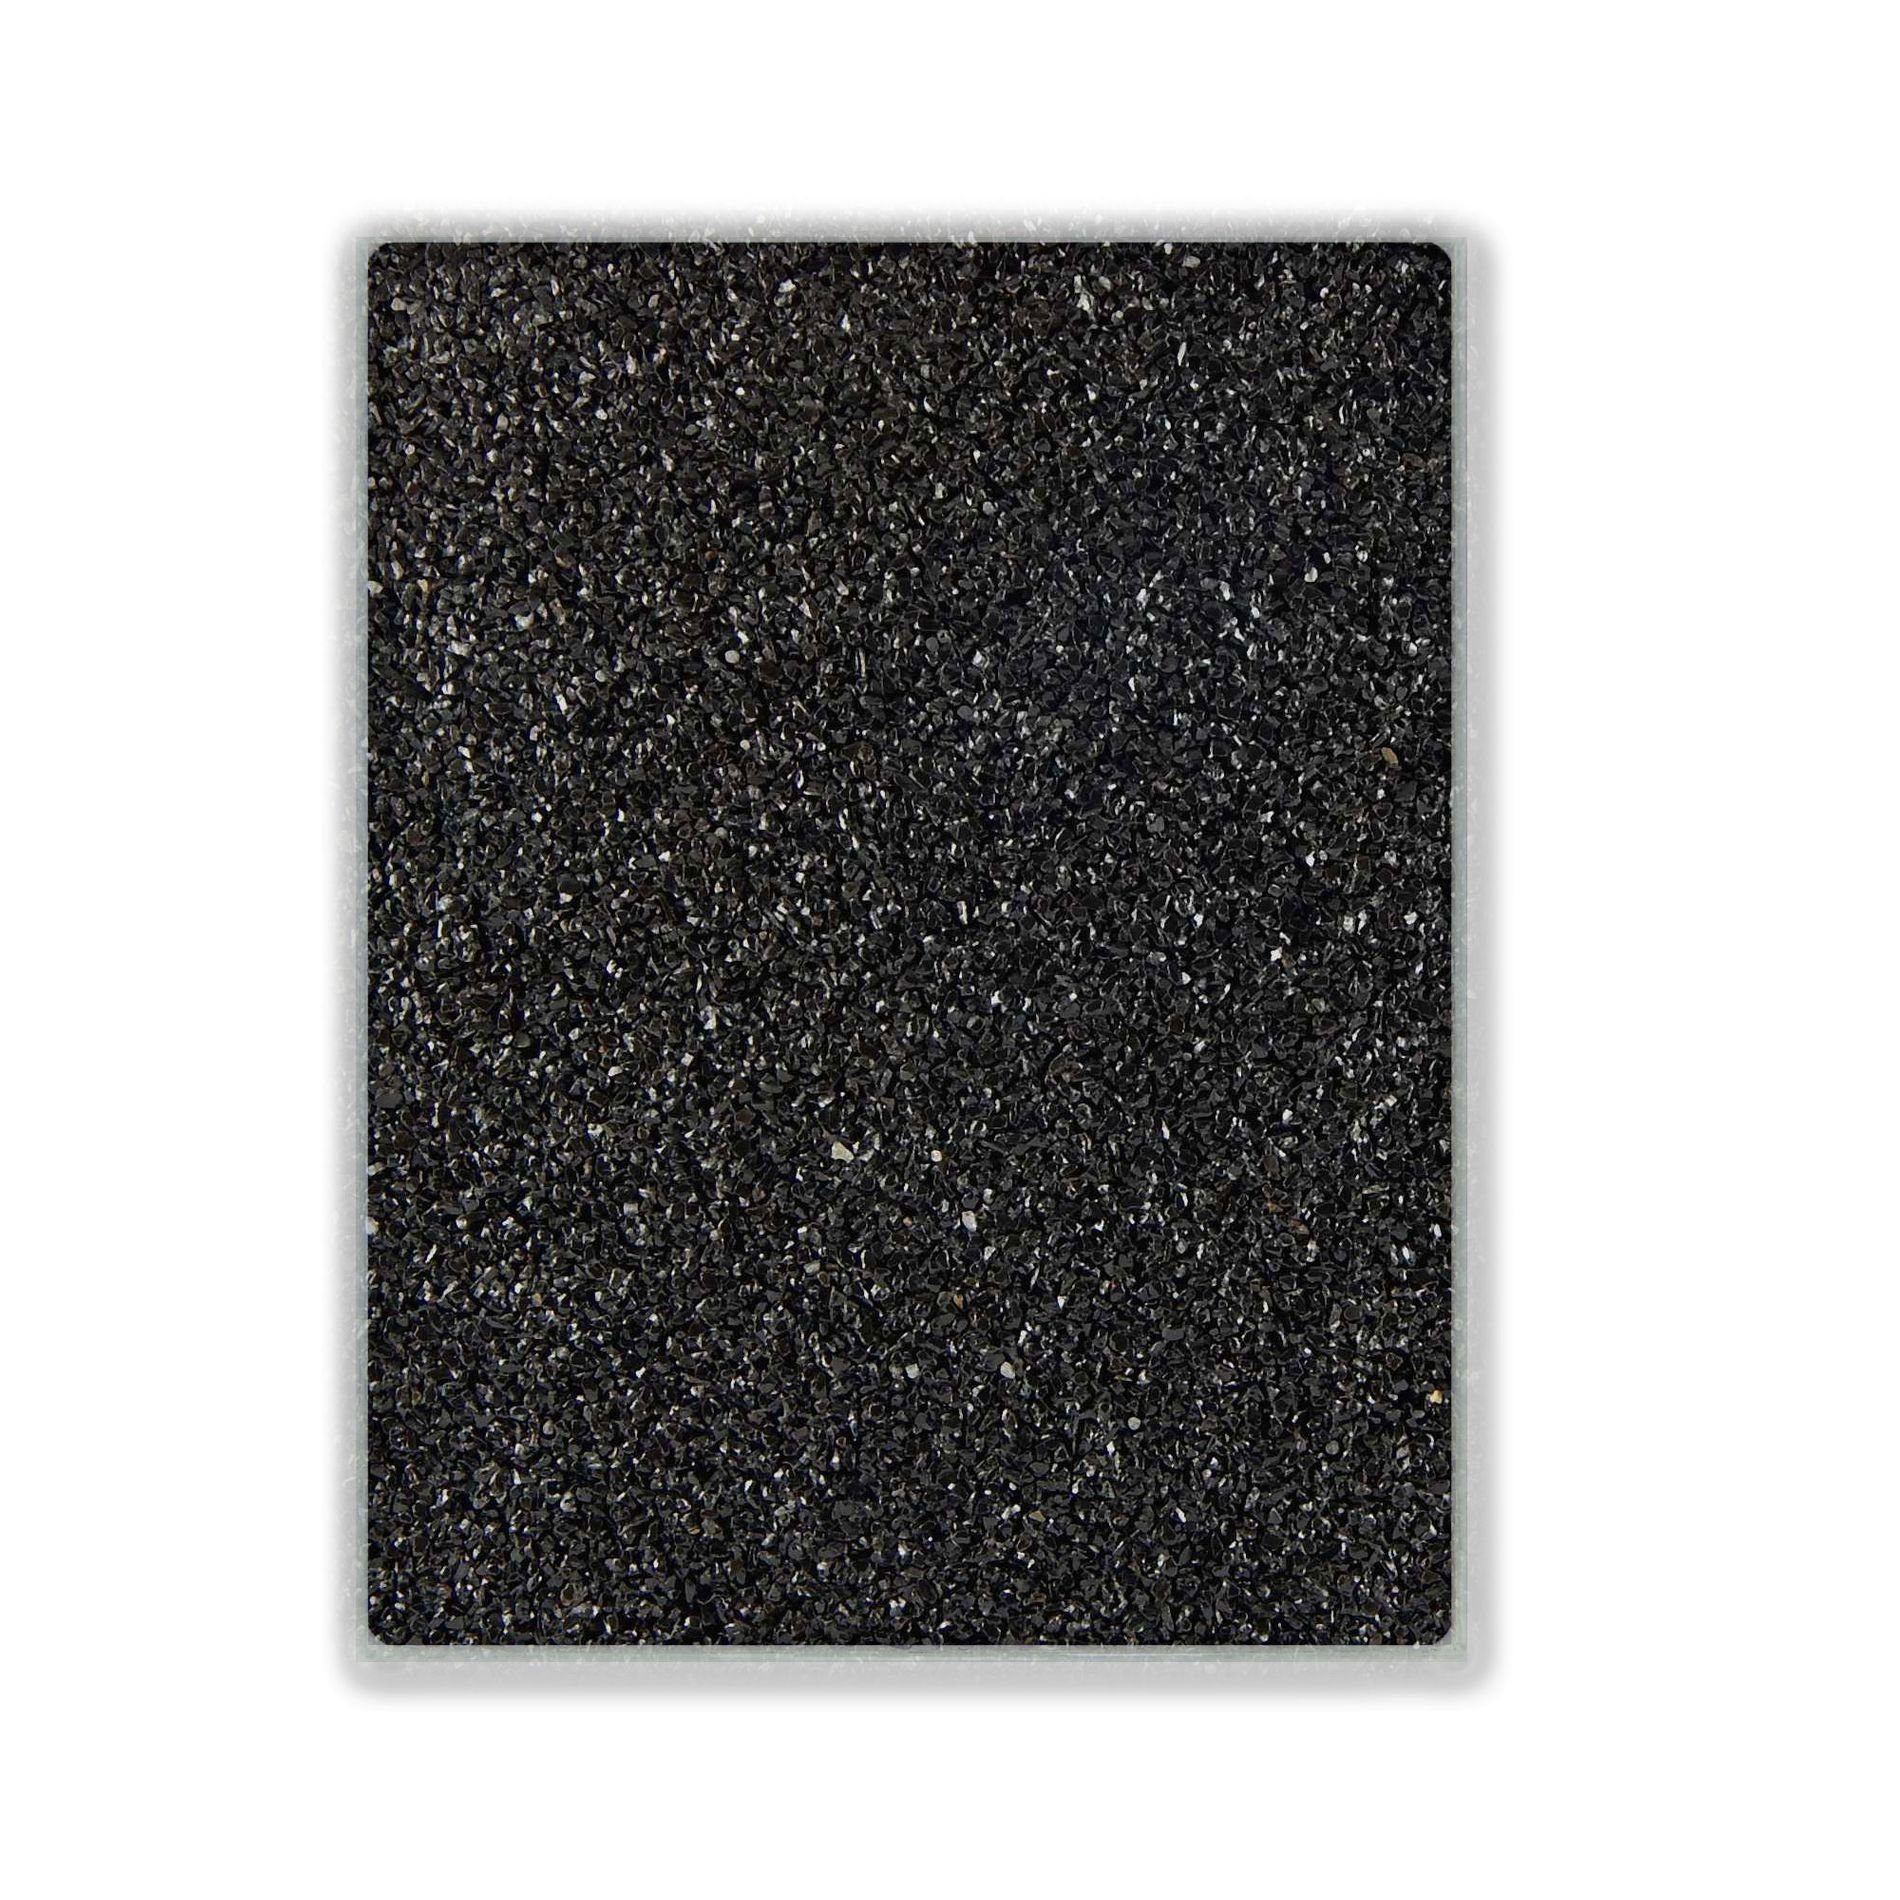 Terralith® Designboden Farbmuster Kompaktboden -nero-, Originalware aus der Charge, die wir in diesem Moment im Abverkauf haben.